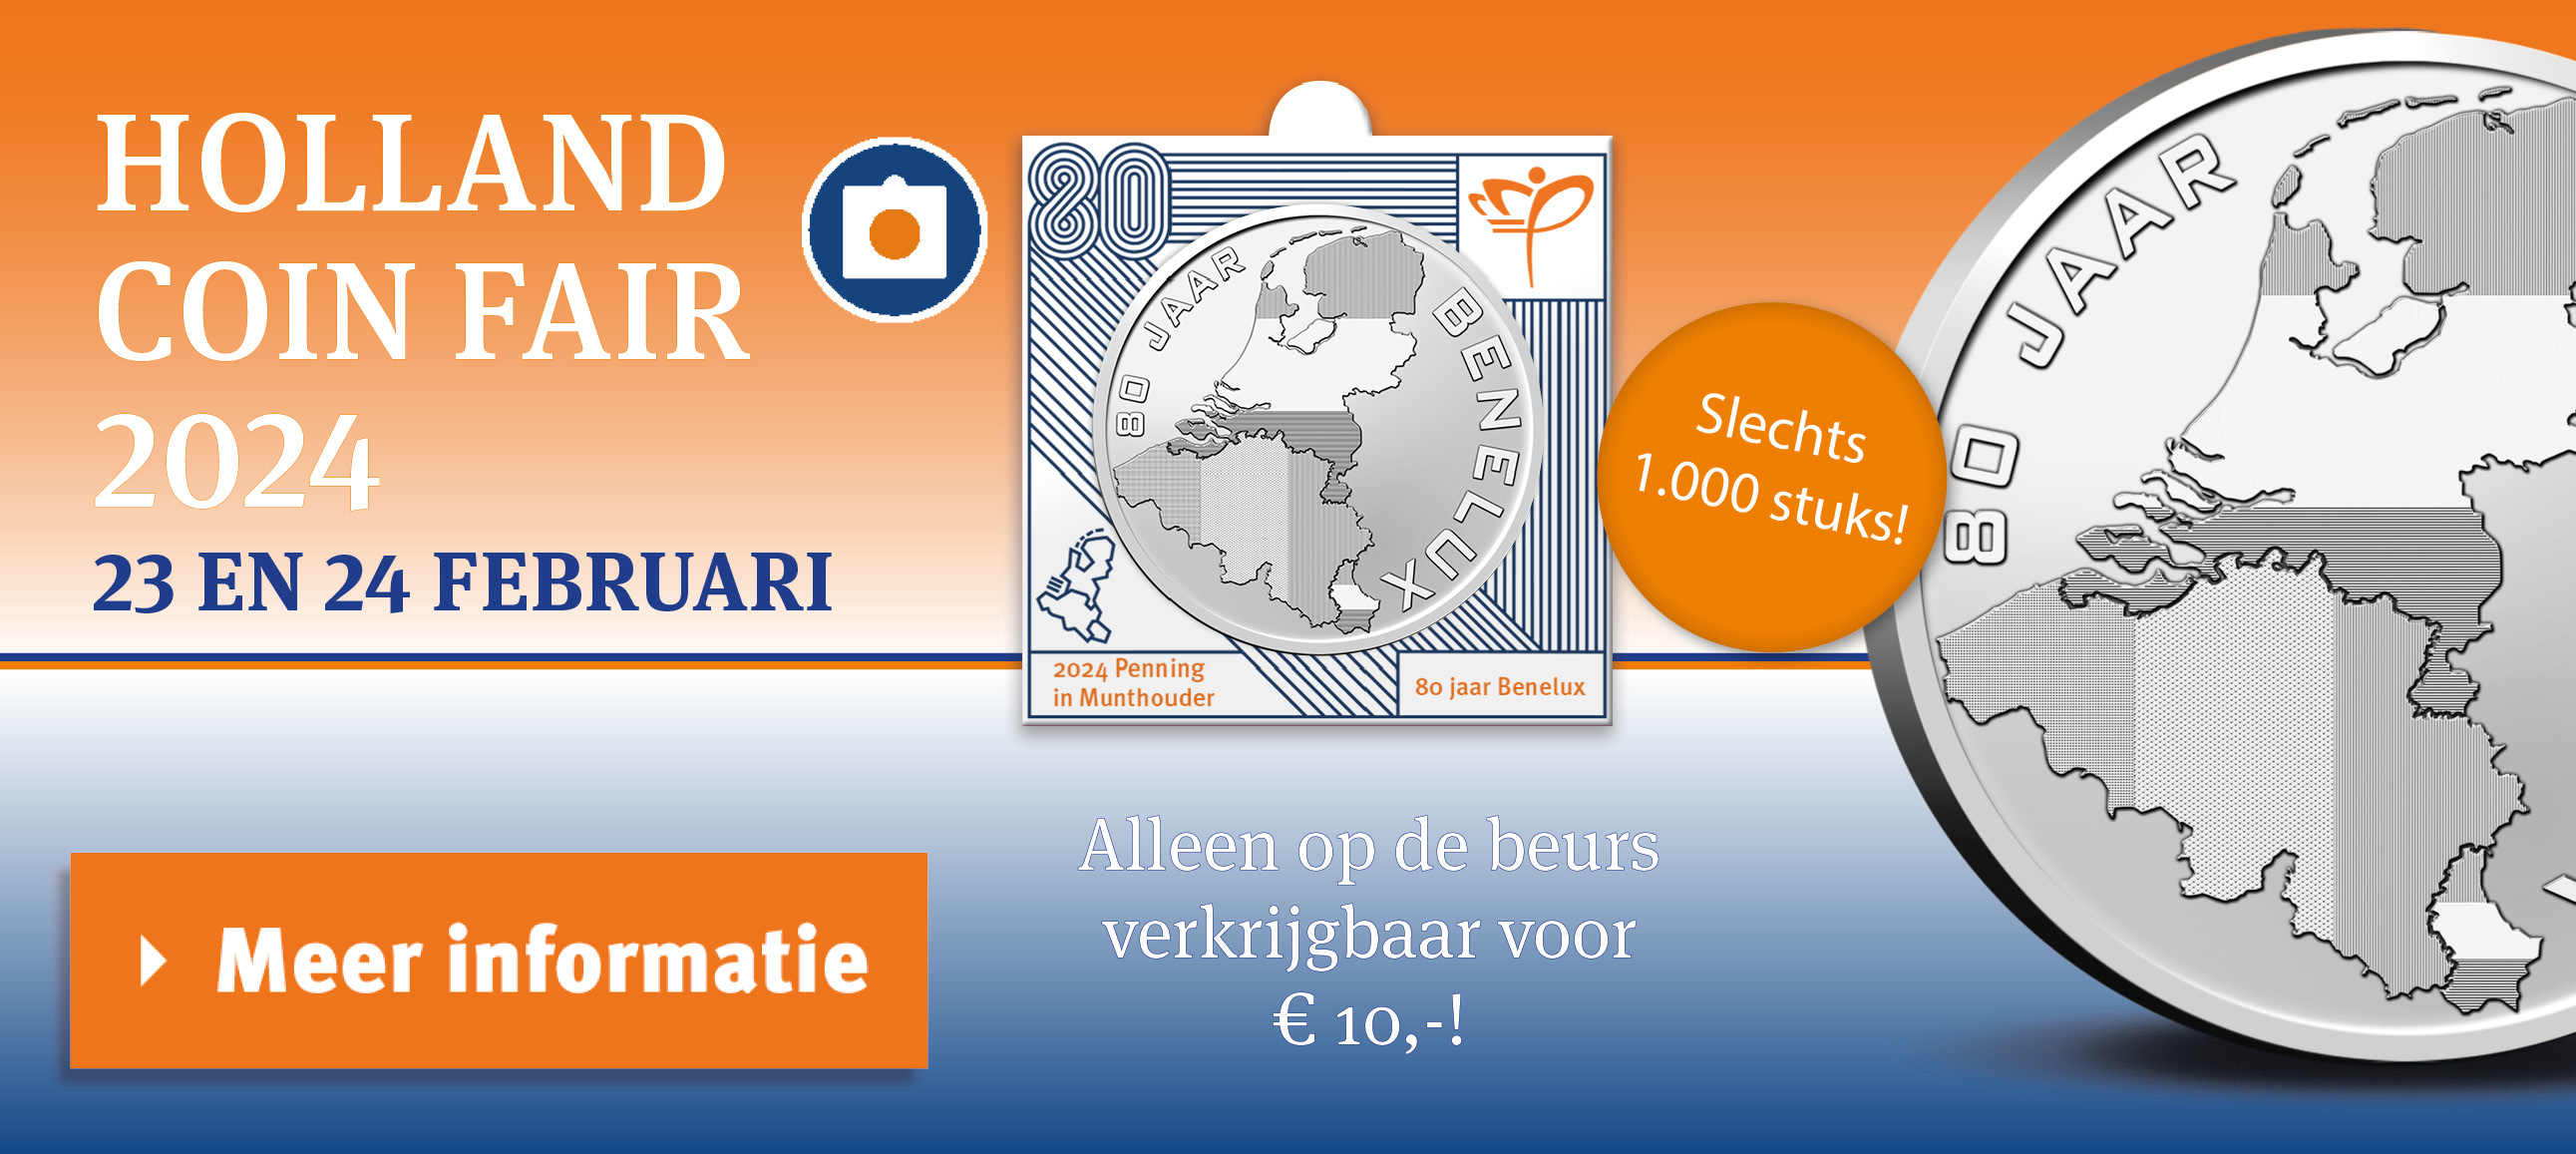 Noteer in uw agenda : Holland Coin Fair 2024